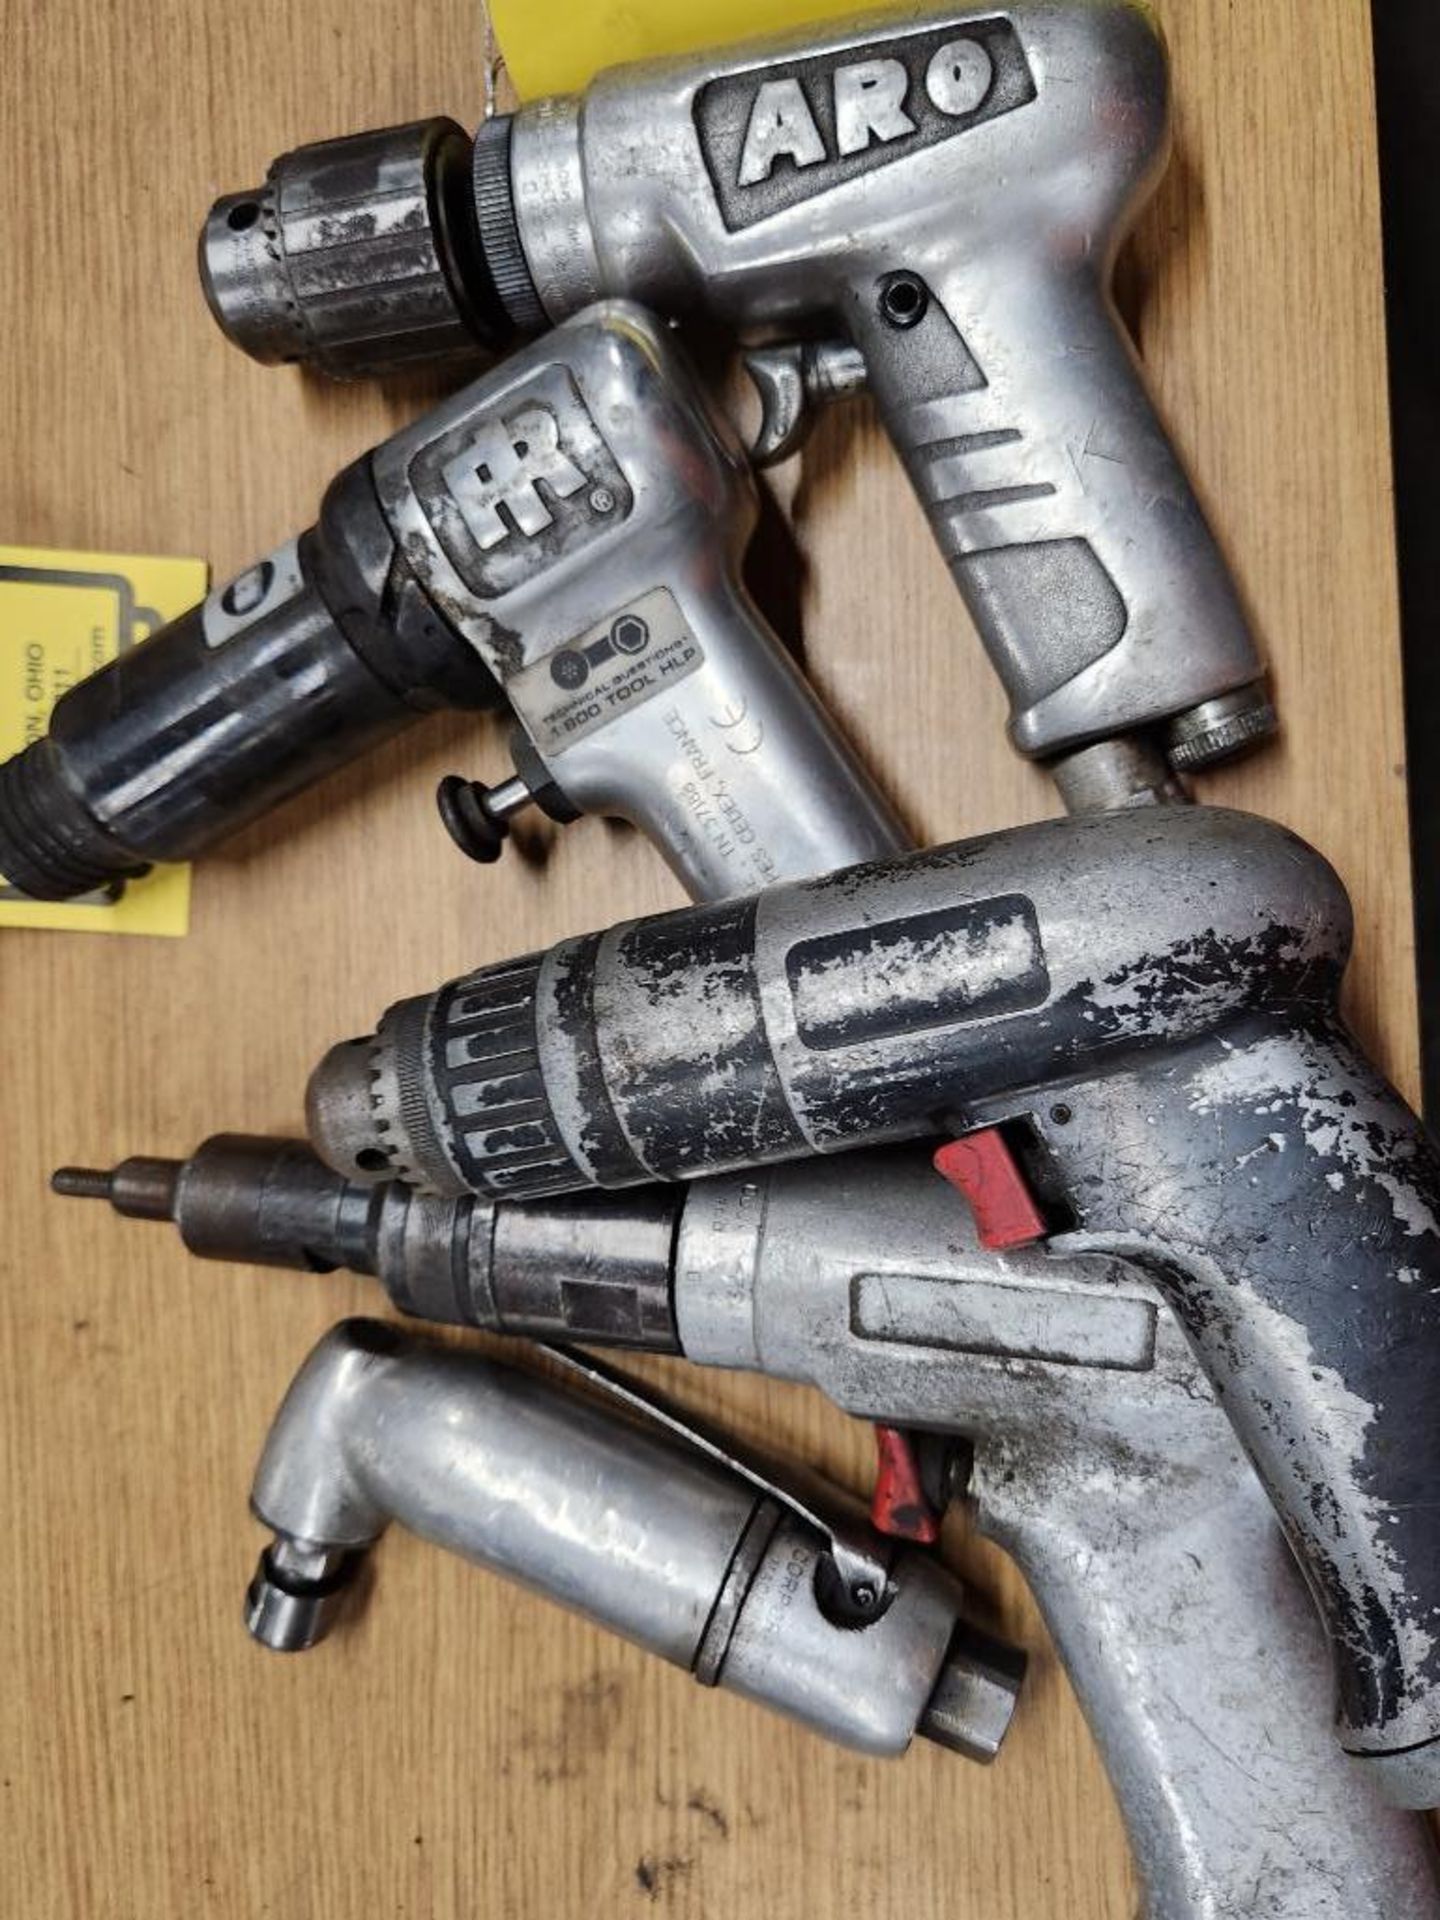 (5) Air Tools, (2) Drills, (1) Air Hammer, (1) Angle Grinder, & (1) Nibbler